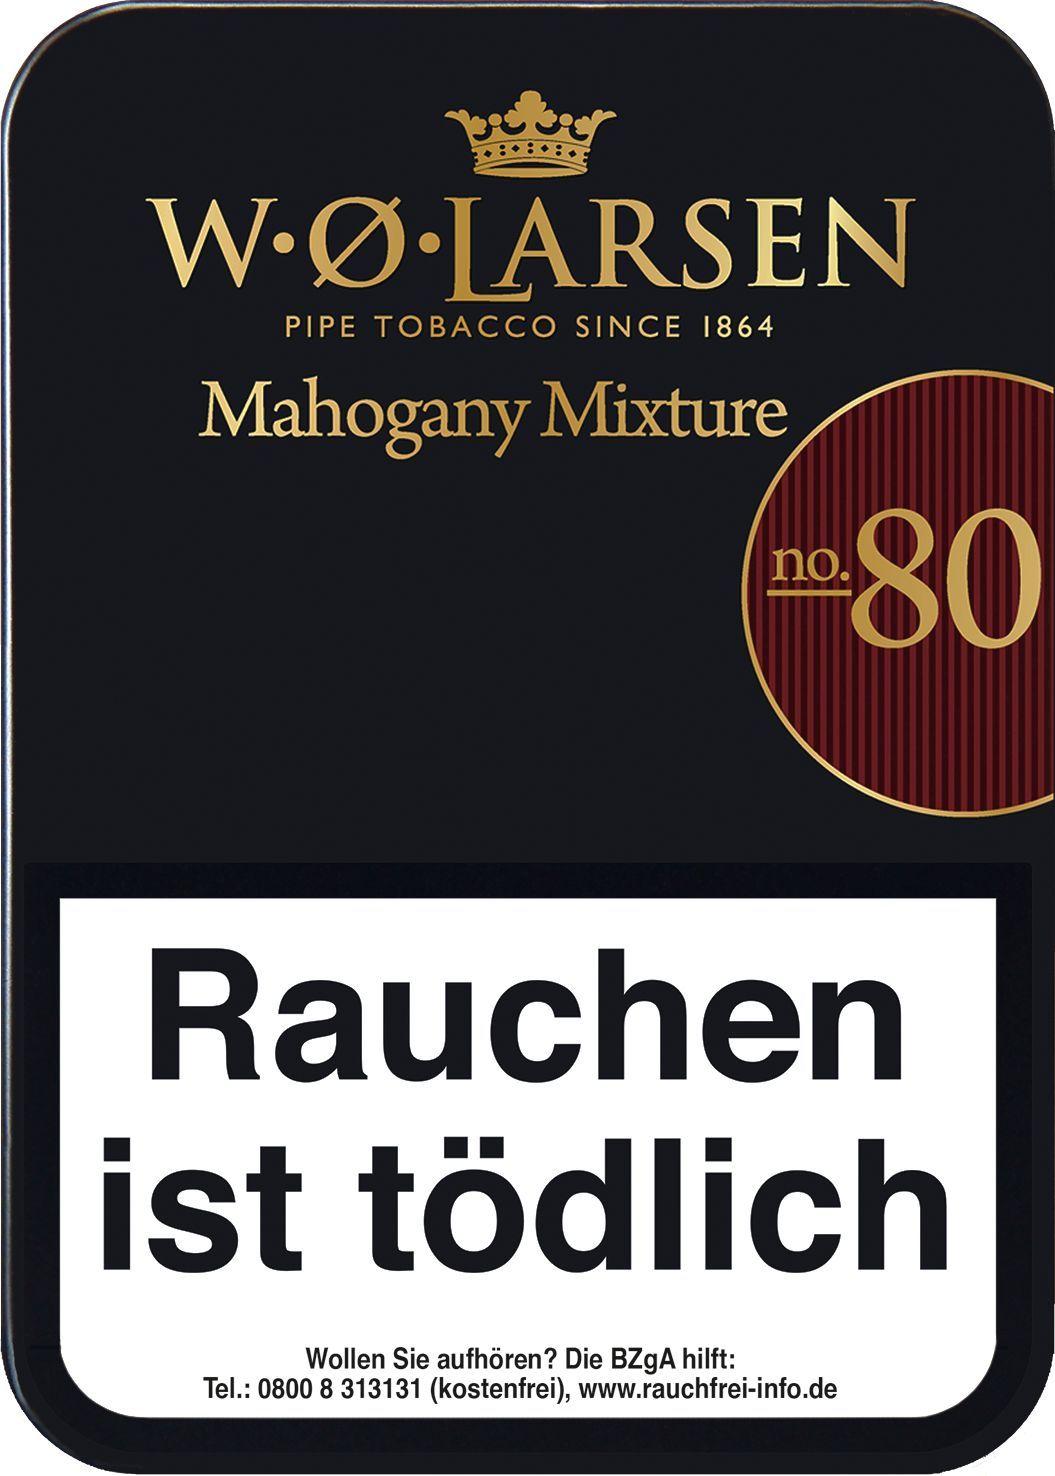 W.O. Larsen Pfeifentabak Mahagony Mixture No. 80 1 Packung